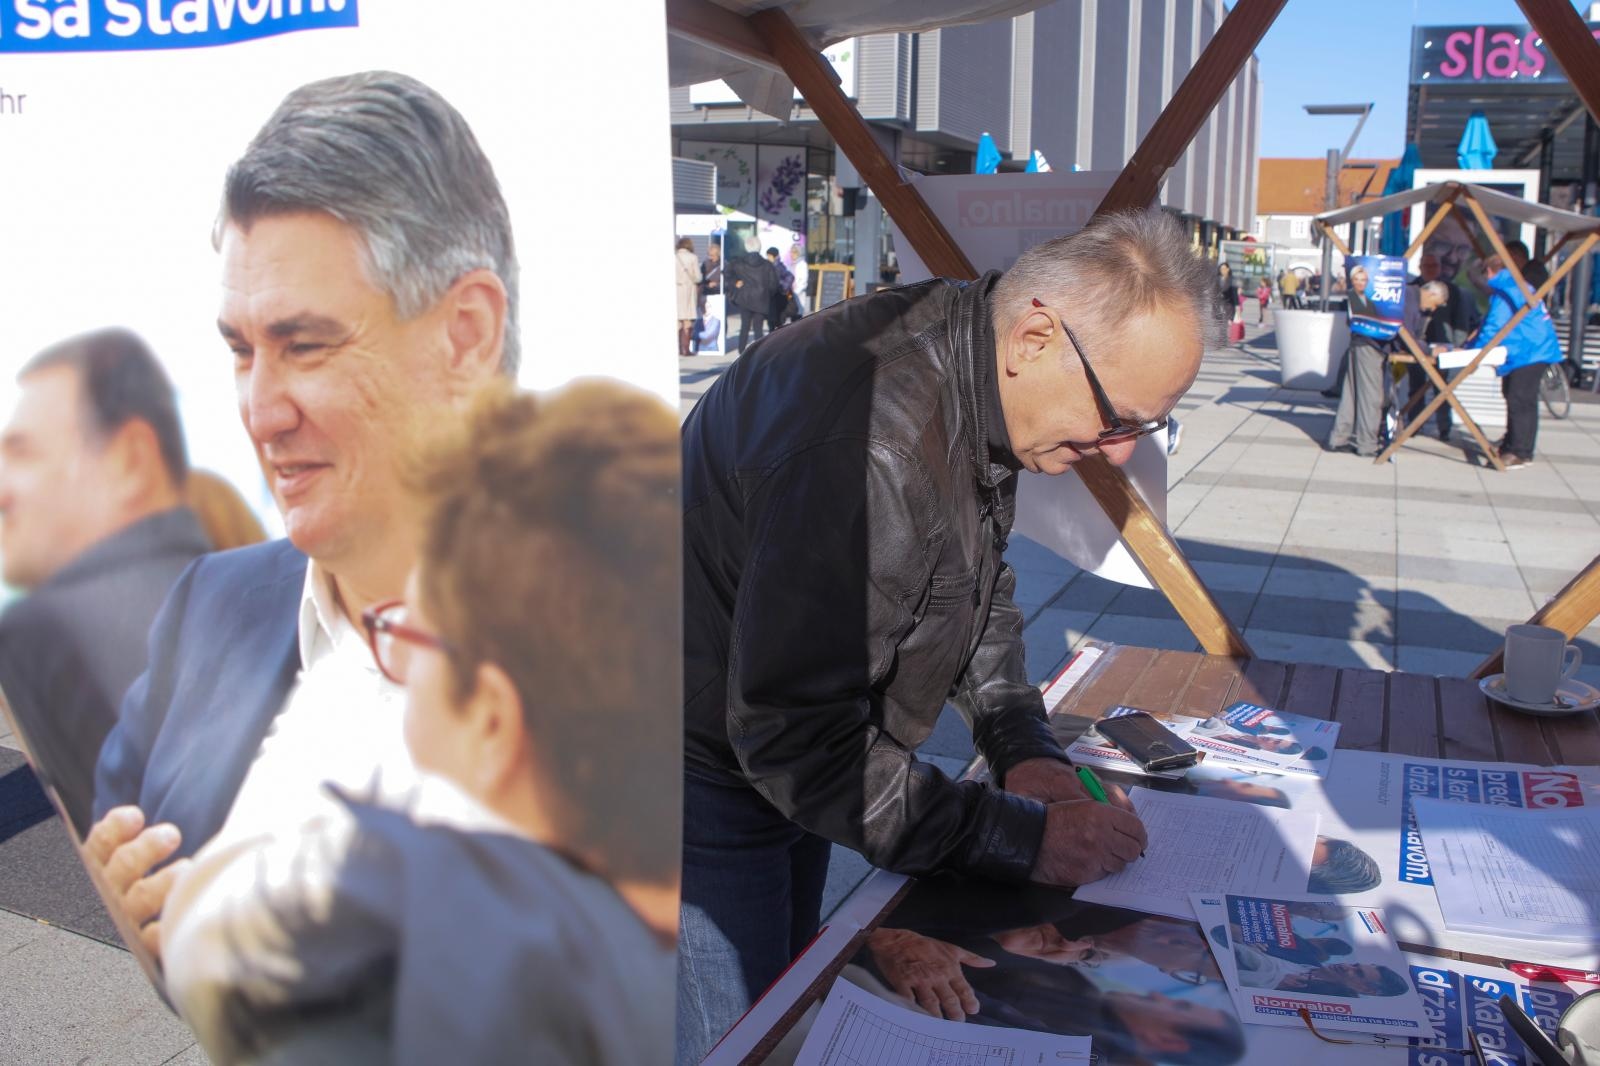 23.11.2019., Osijek - Branimir Glavas je na standu za prikupljanje potpisa podrske Milanovicu za predsjednickog kandidata, dao svoj potpis.
Photo: Dubravka Petric/PIXSELL